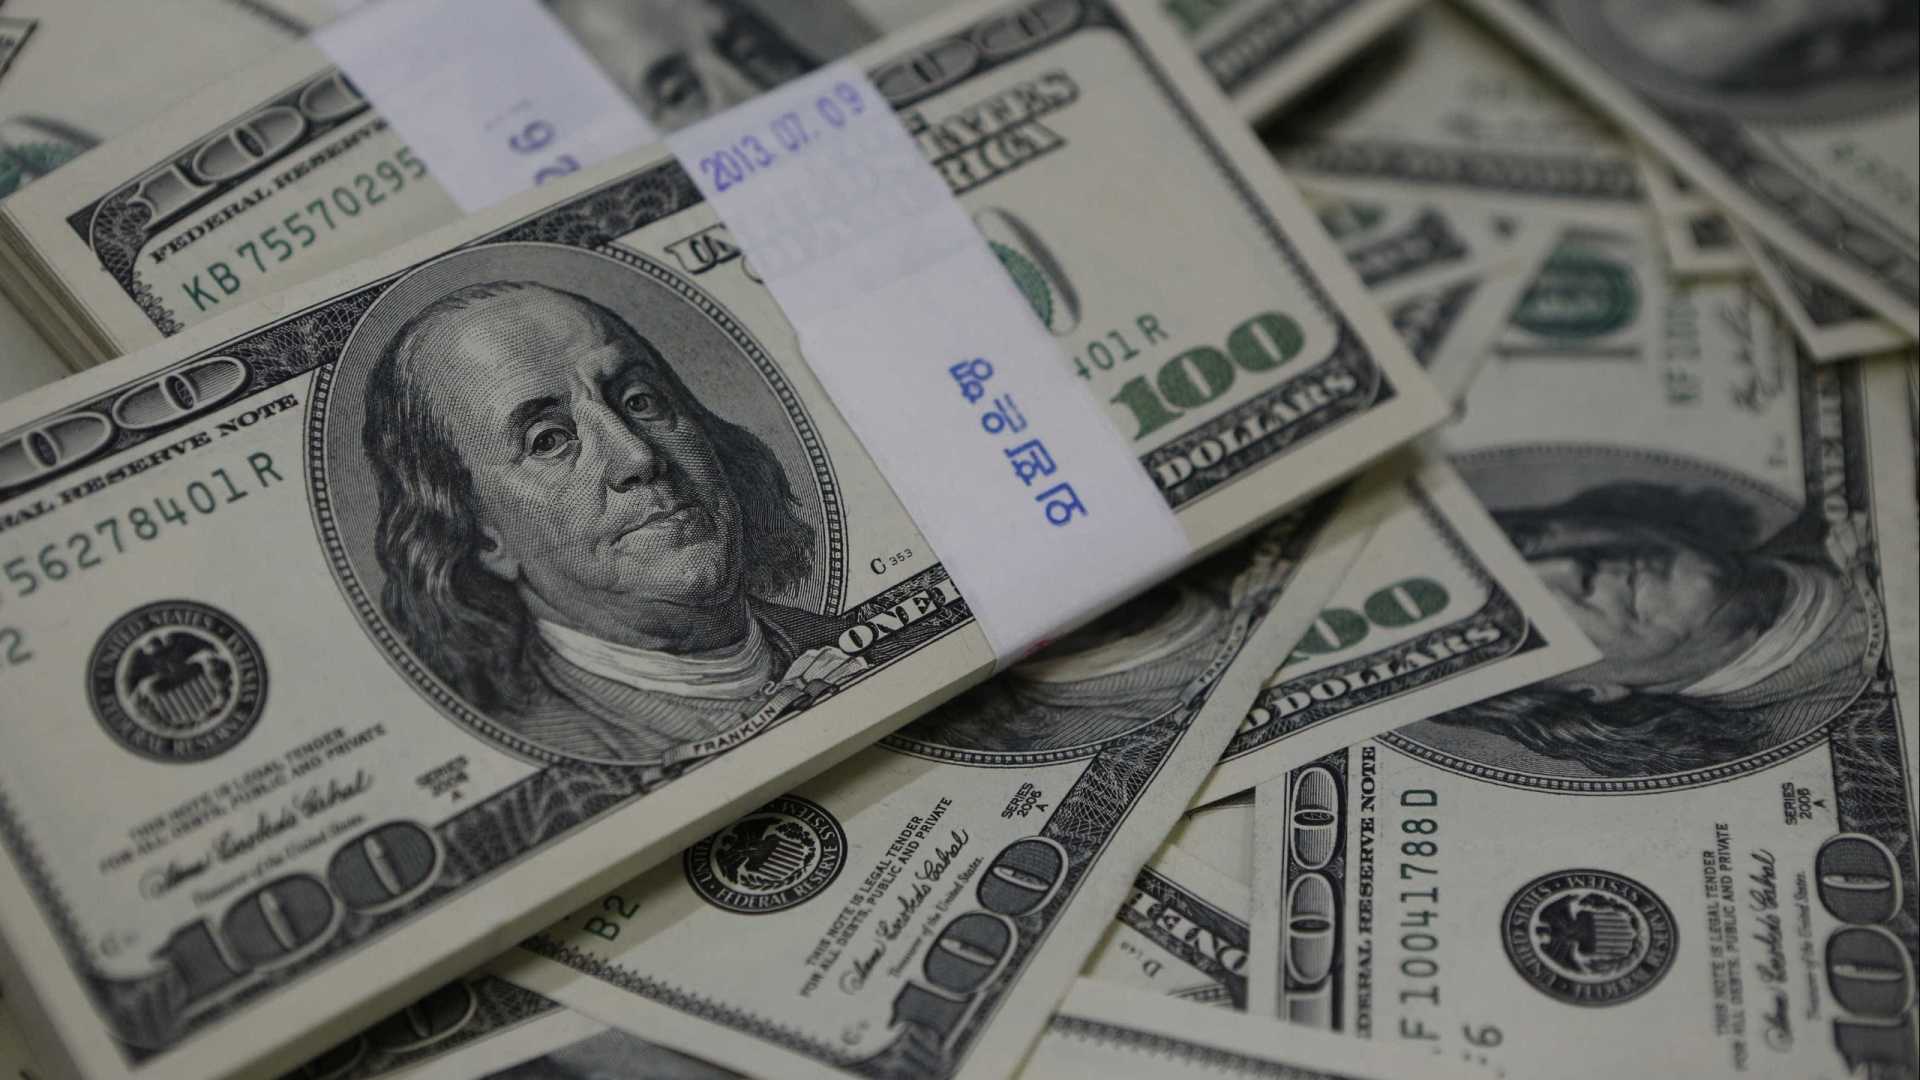 Investidores já veem dólar acima de R$ 4,00, aponta pesquisa